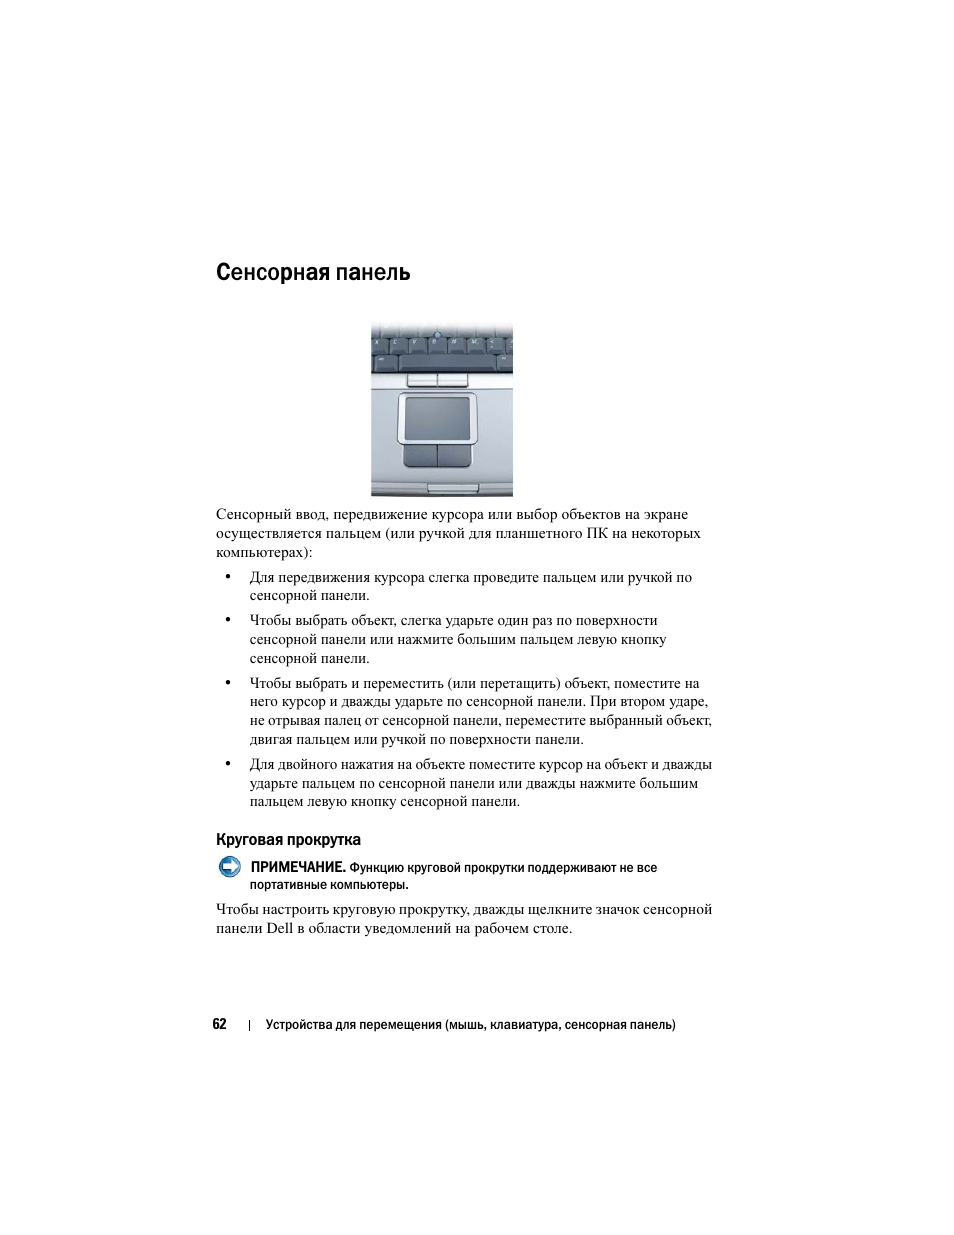 Сенсорная панель, Круговая прокрутка | Инструкция по эксплуатации Dell Inspiron 560 | Страница 62 / 384